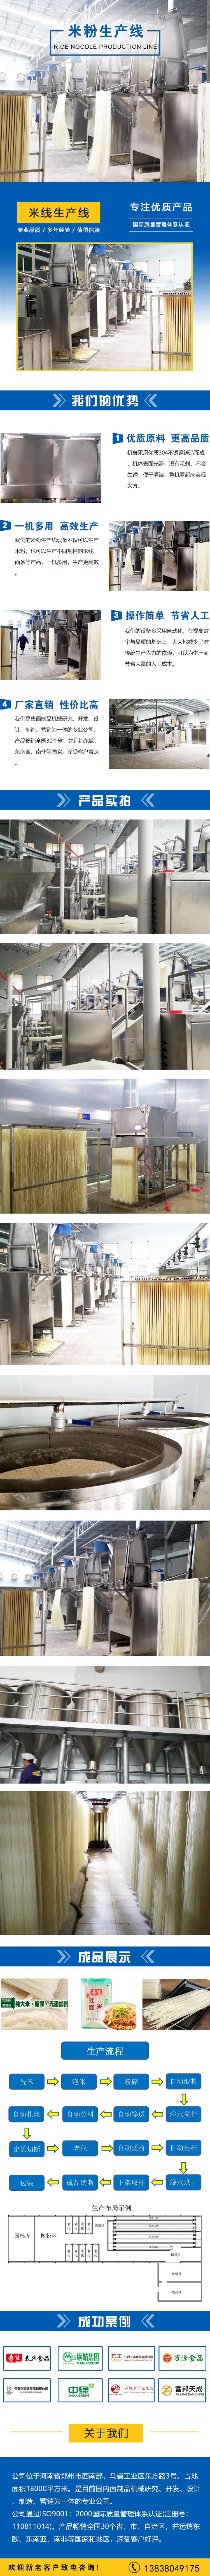 米粉生产线.jpg